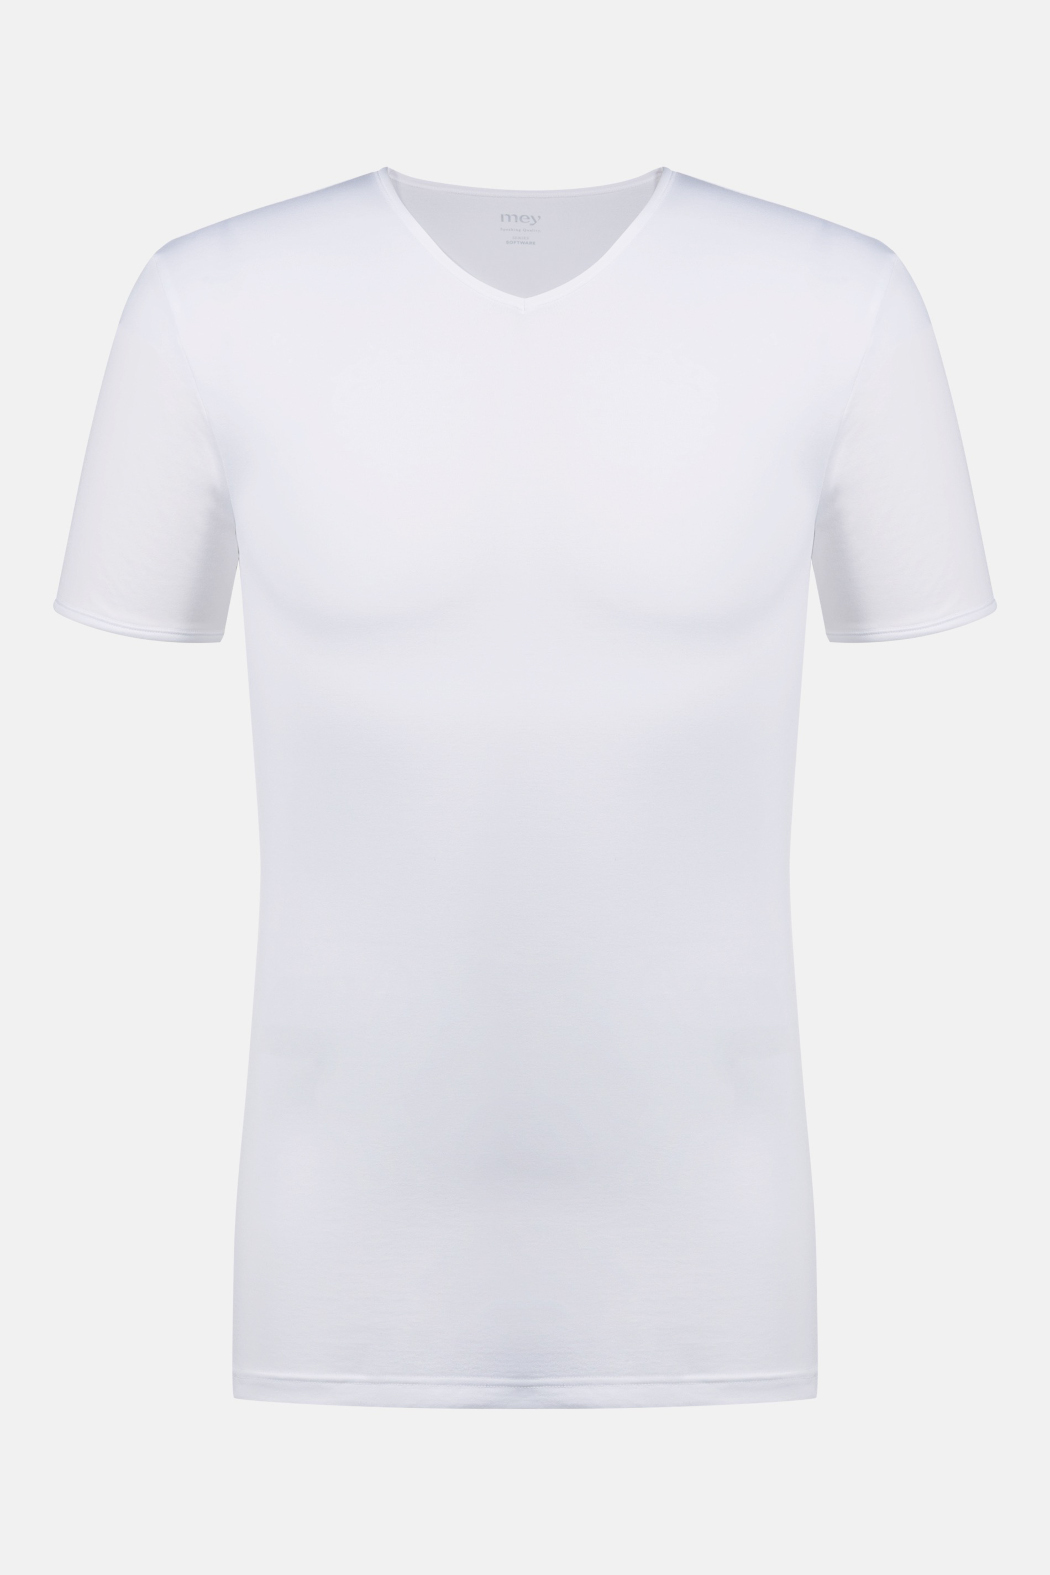 Mey Serie Software Herren V-Neck Shirt